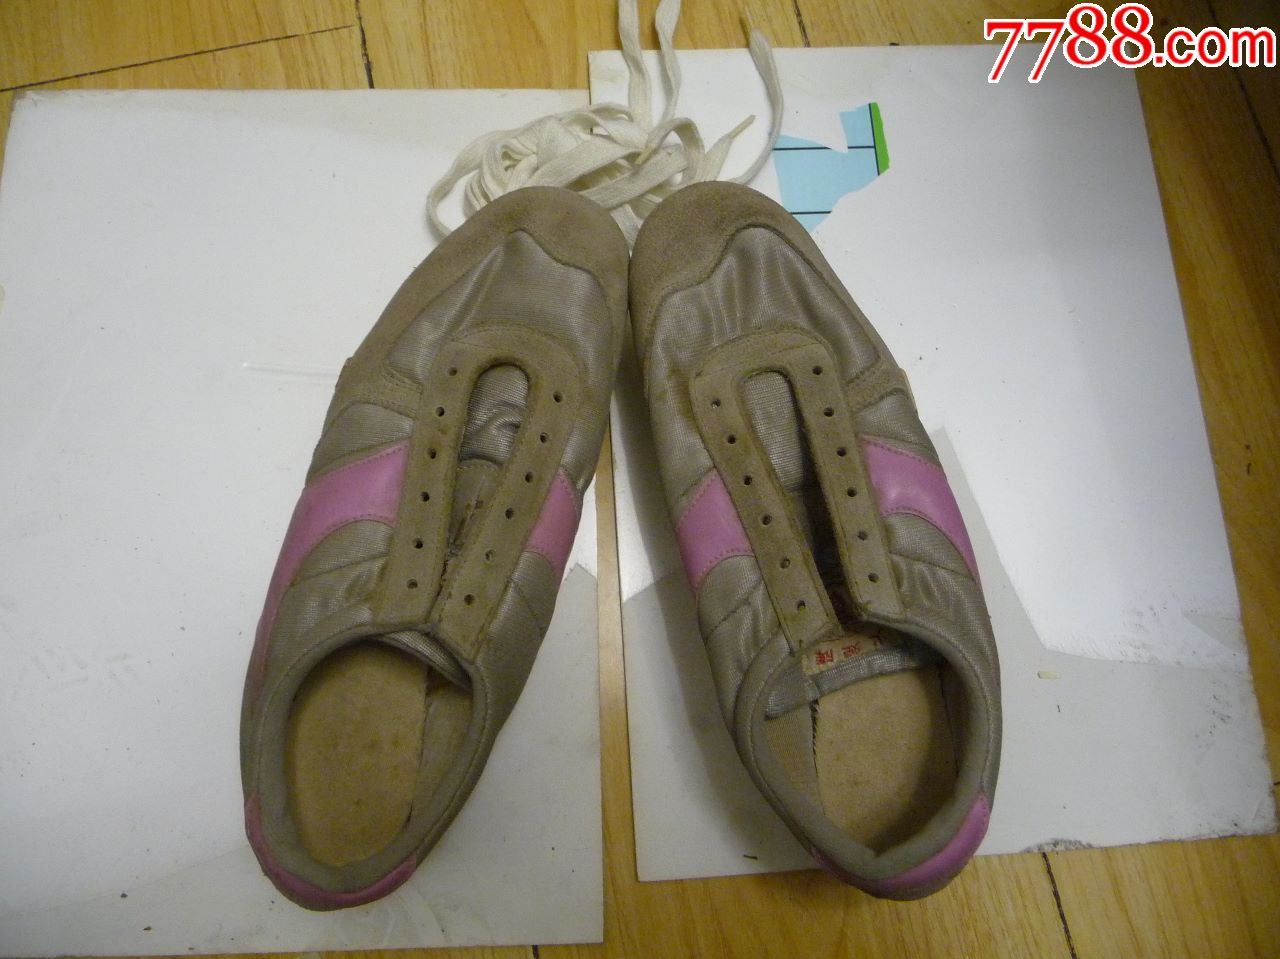 古董运动鞋收藏上世纪八十年代的火炬牌钉子鞋41码无工具未穿库存货11